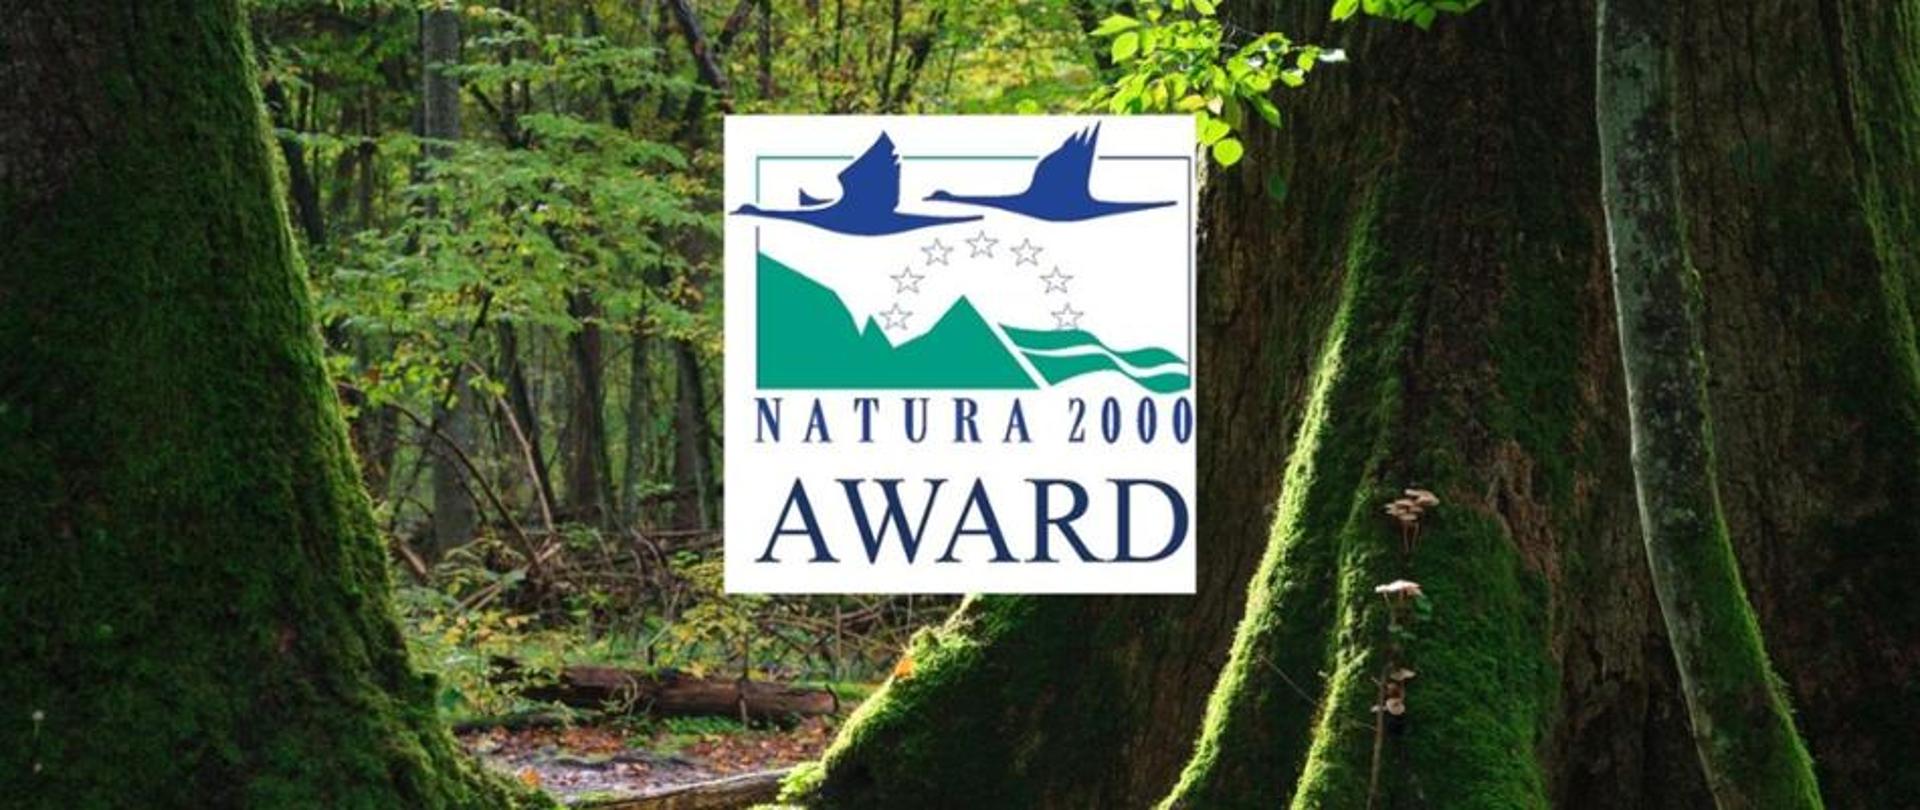 Na tle lasu - grube drzewa porośnięte zielonym mchem. Po środku biały prostokąt z napisem Natura 2000 AWARD.